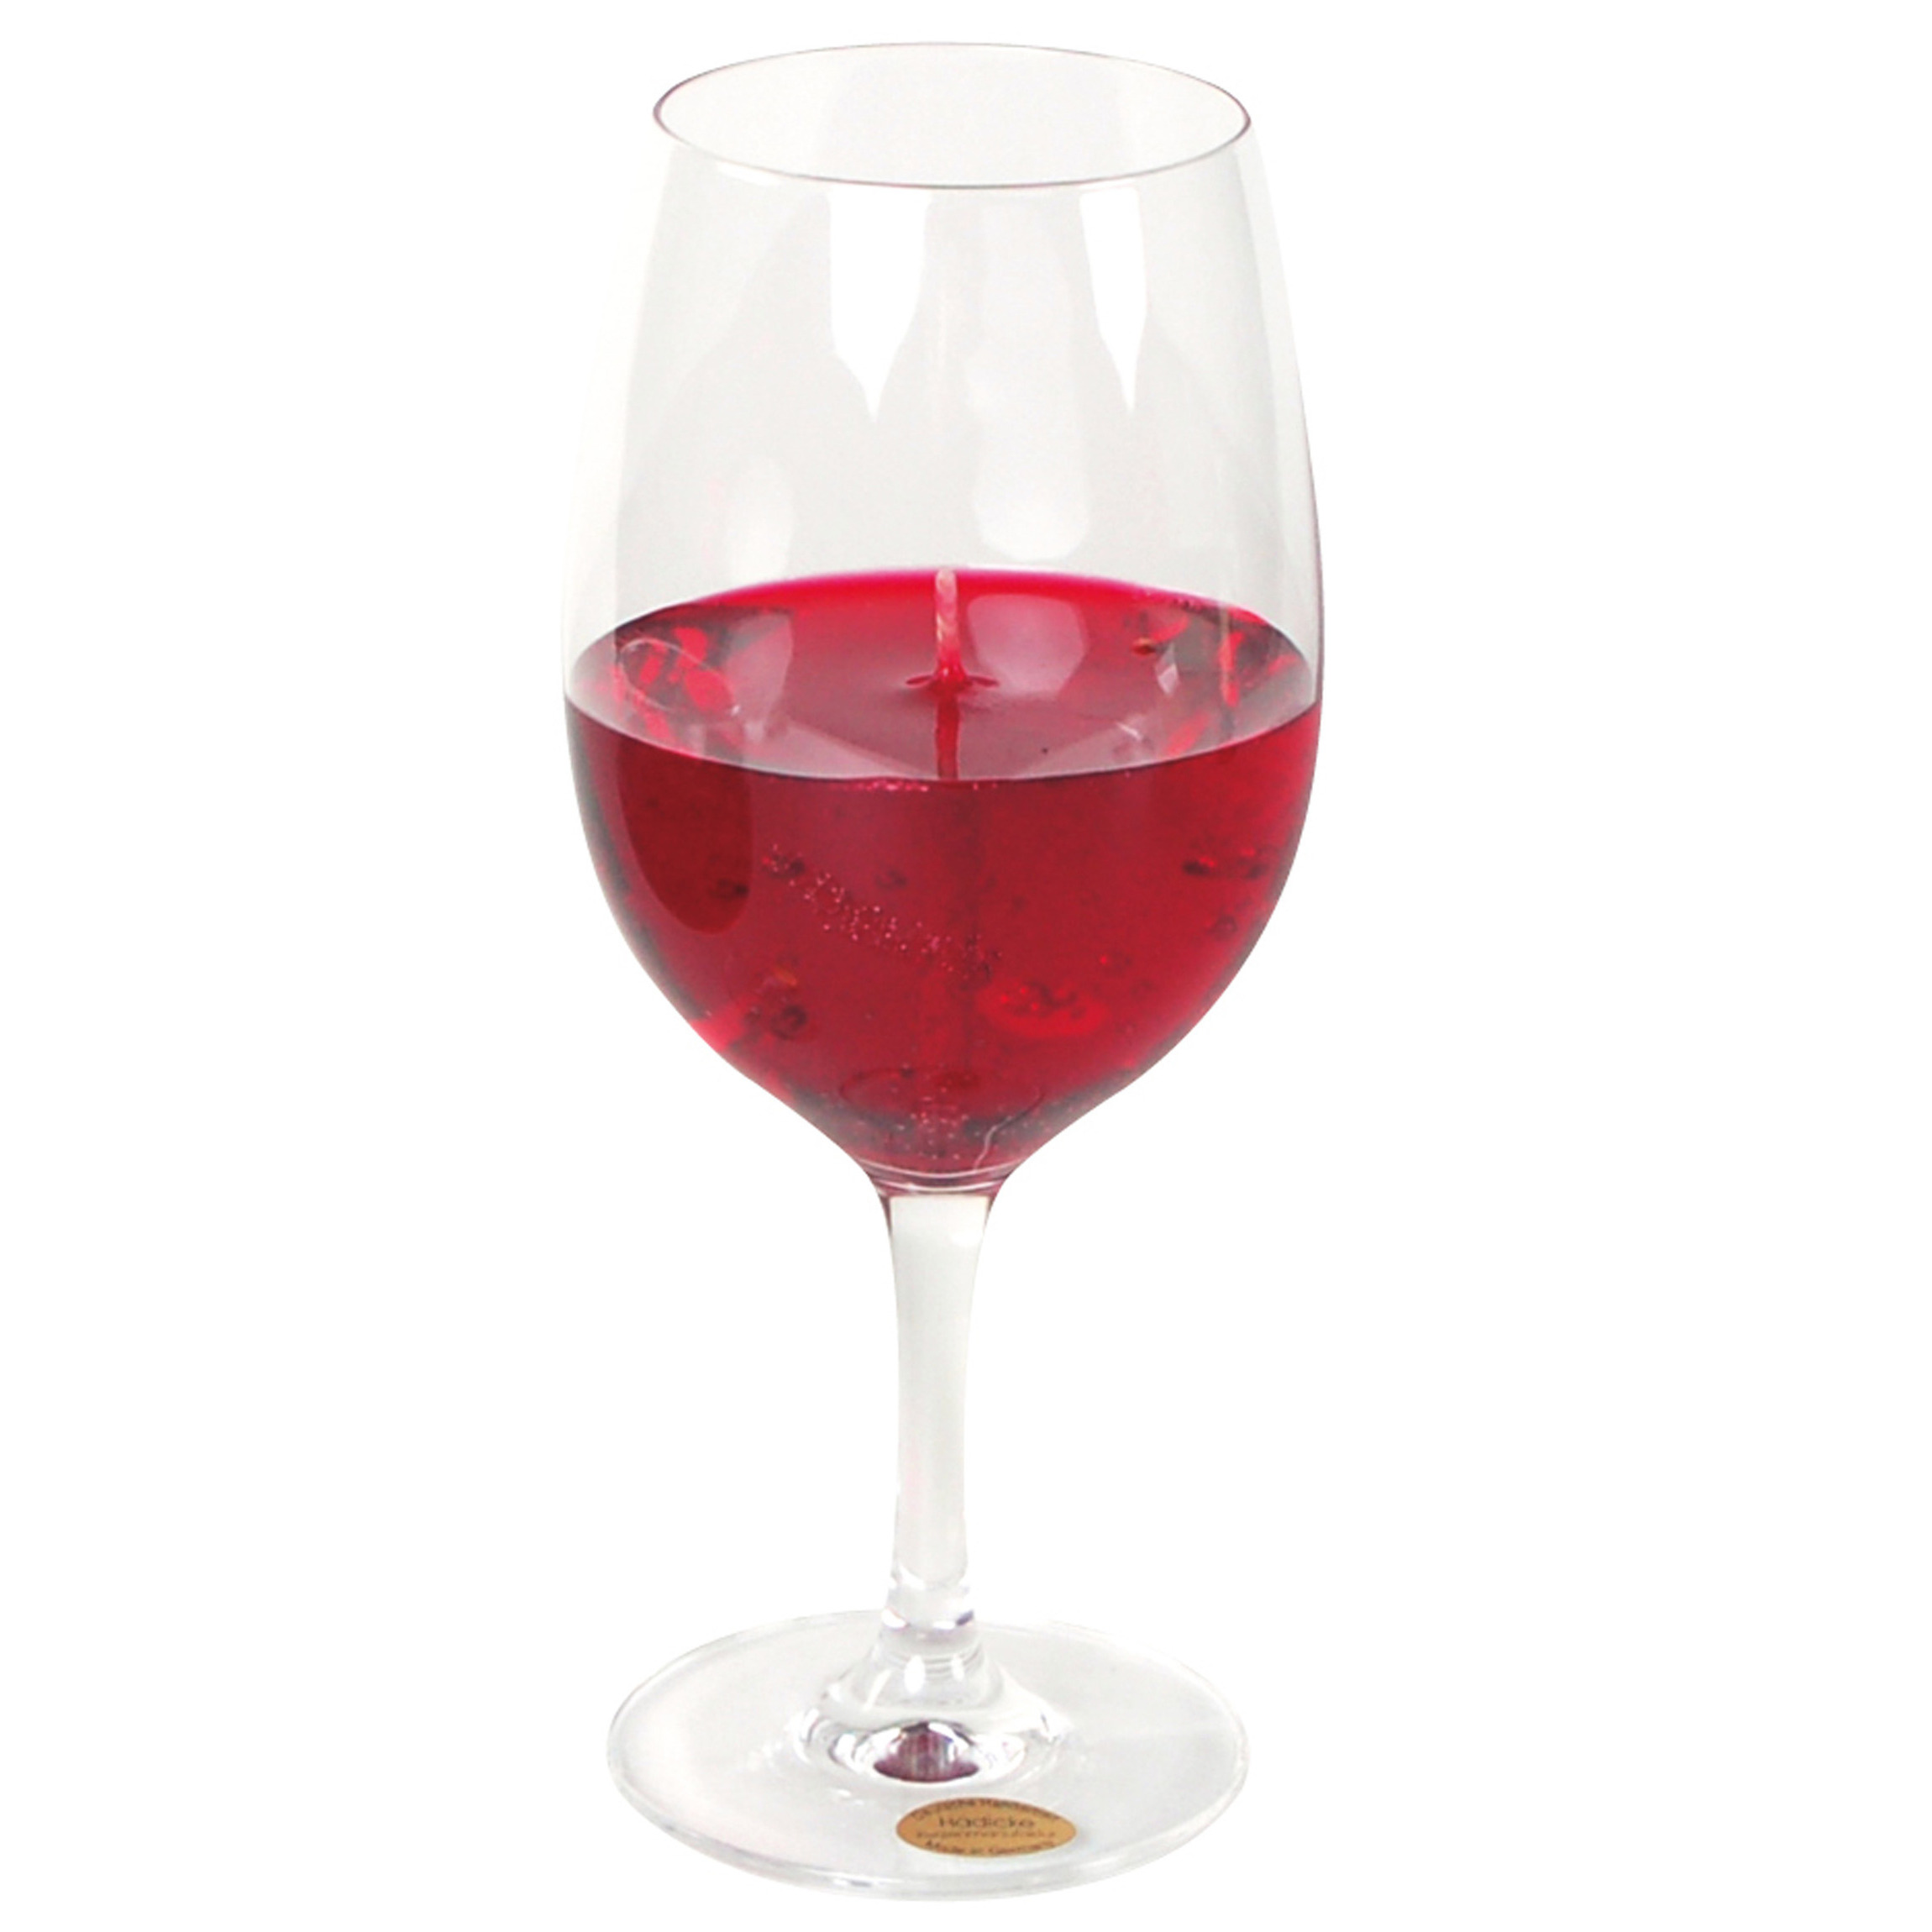 Wijnglas gadget-kado Wijnkaars geurkaars H21 cm rode wijn - Moederdag-verjaardag